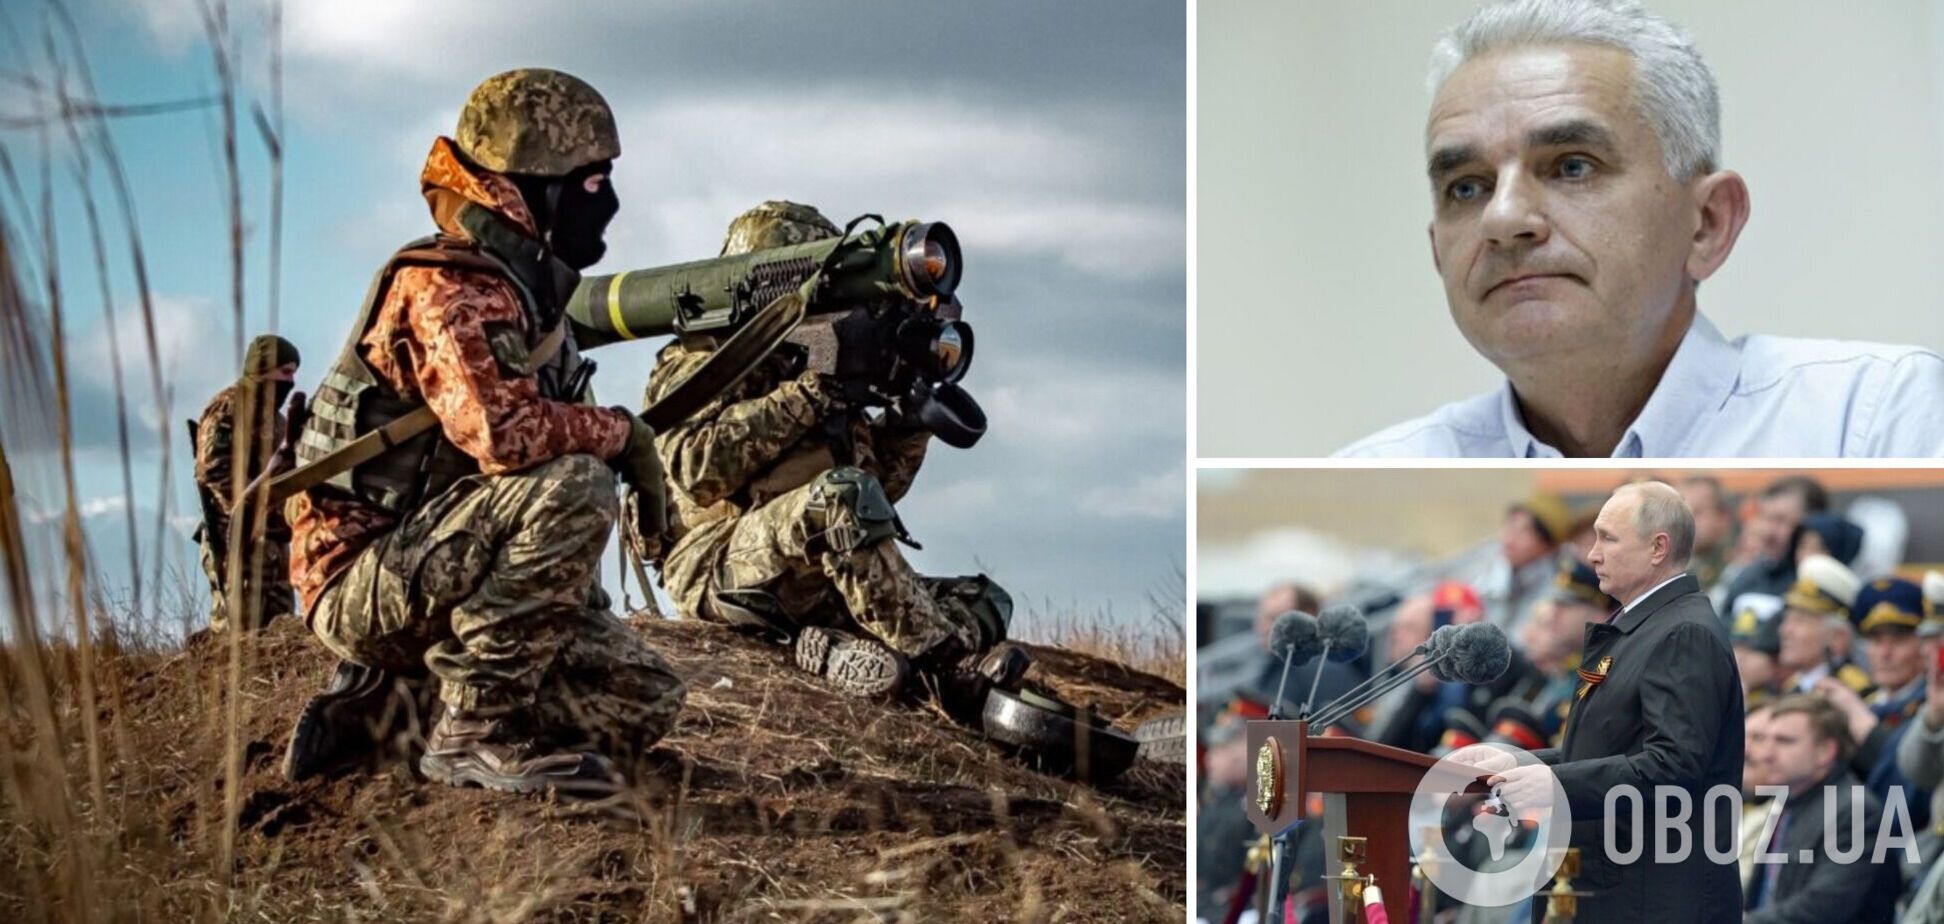 Военный эксперт Мельник: Украина может бить по РФ, но оружие США использовать не будет. Интервью